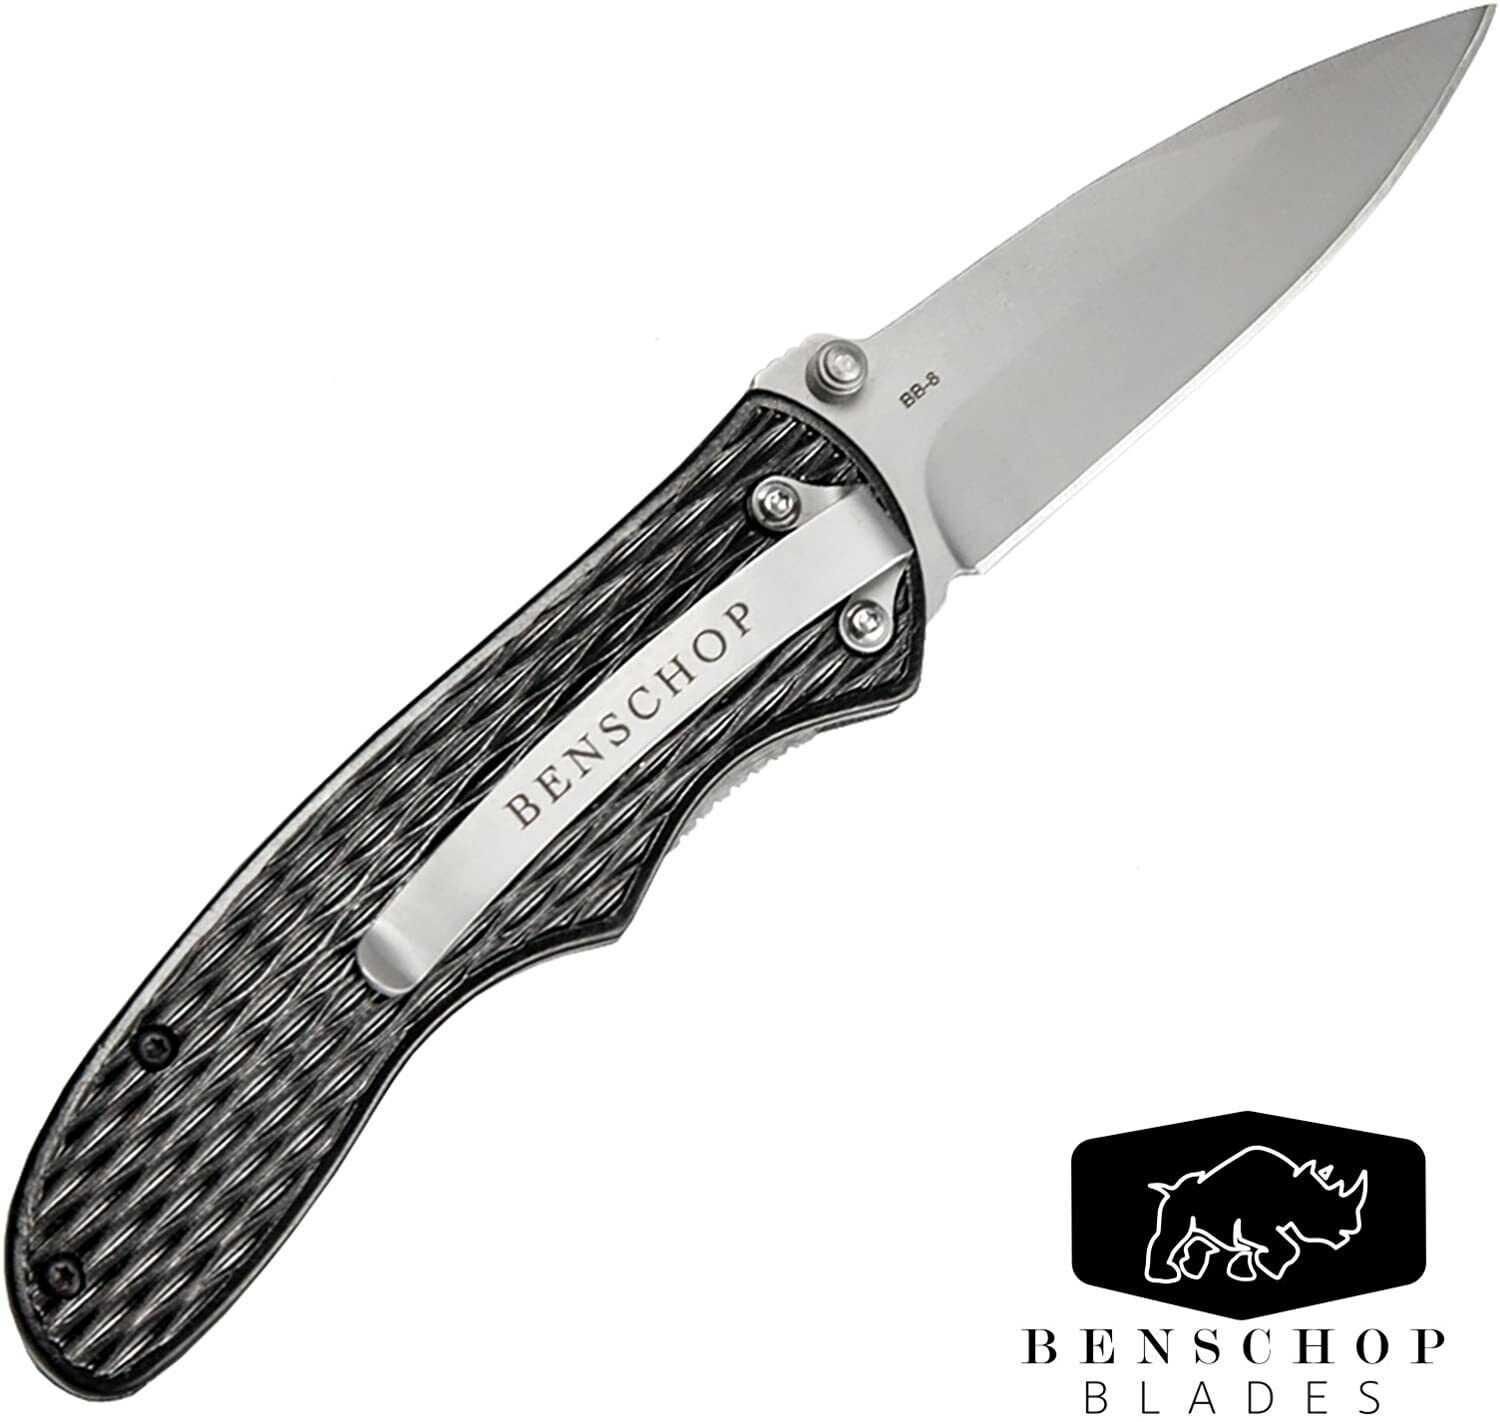 BENSCHOP BLADES Matt Black Stainless Steel 3” Blade SHARP POCKET KNIFE EDC USA